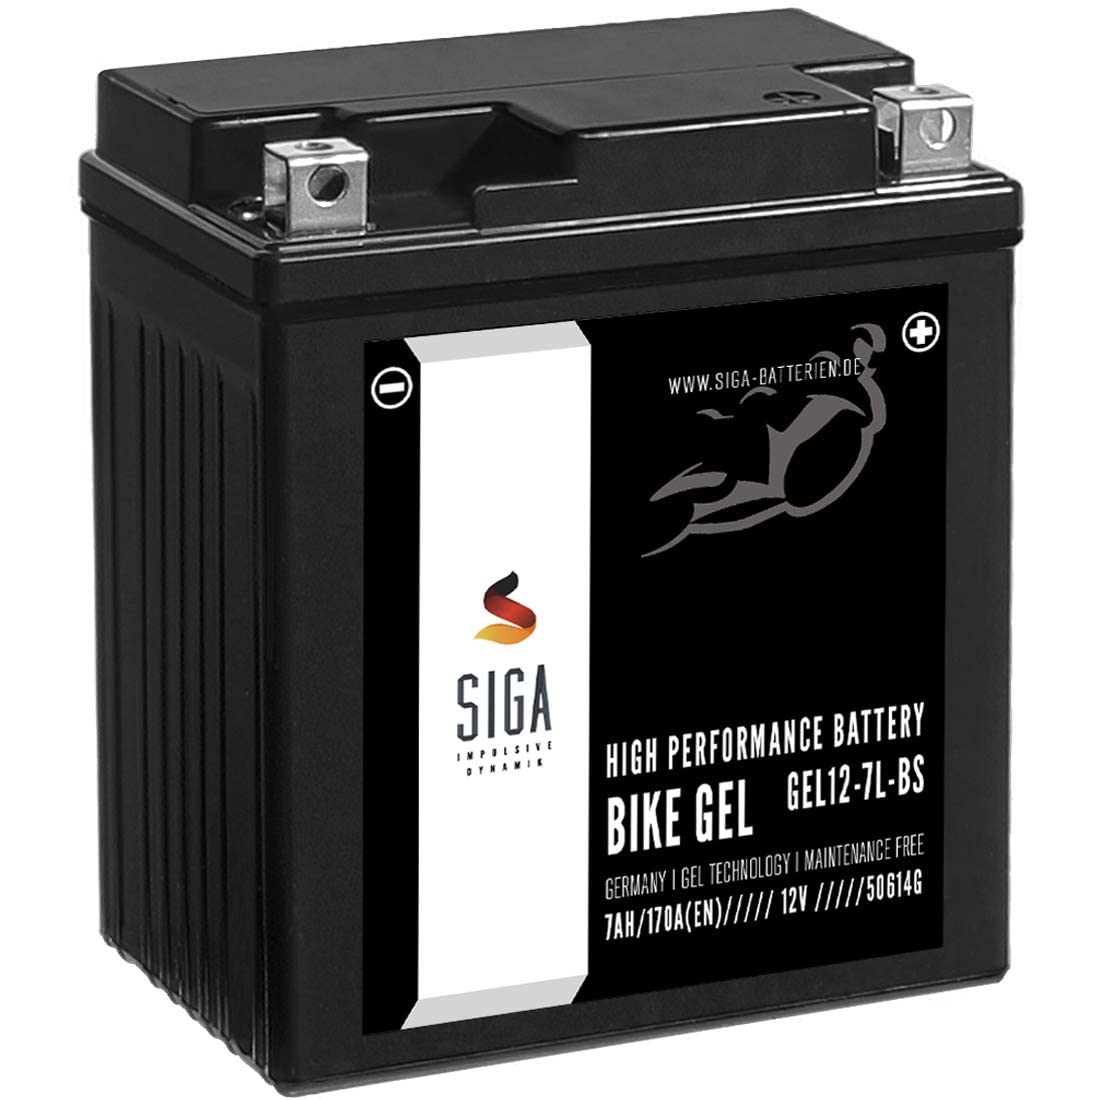 SIGA GEL Motorradbatterie 12V 7Ah 170A/EN Gel Batterie YTX7L-BS Gel12-7L-BS YTX7L-4 YTX7L-BS CTX7L-BS GTX7L-BS ETX-7L-BS 50614LF von SIGA IMPULSIVE DYNAMIK